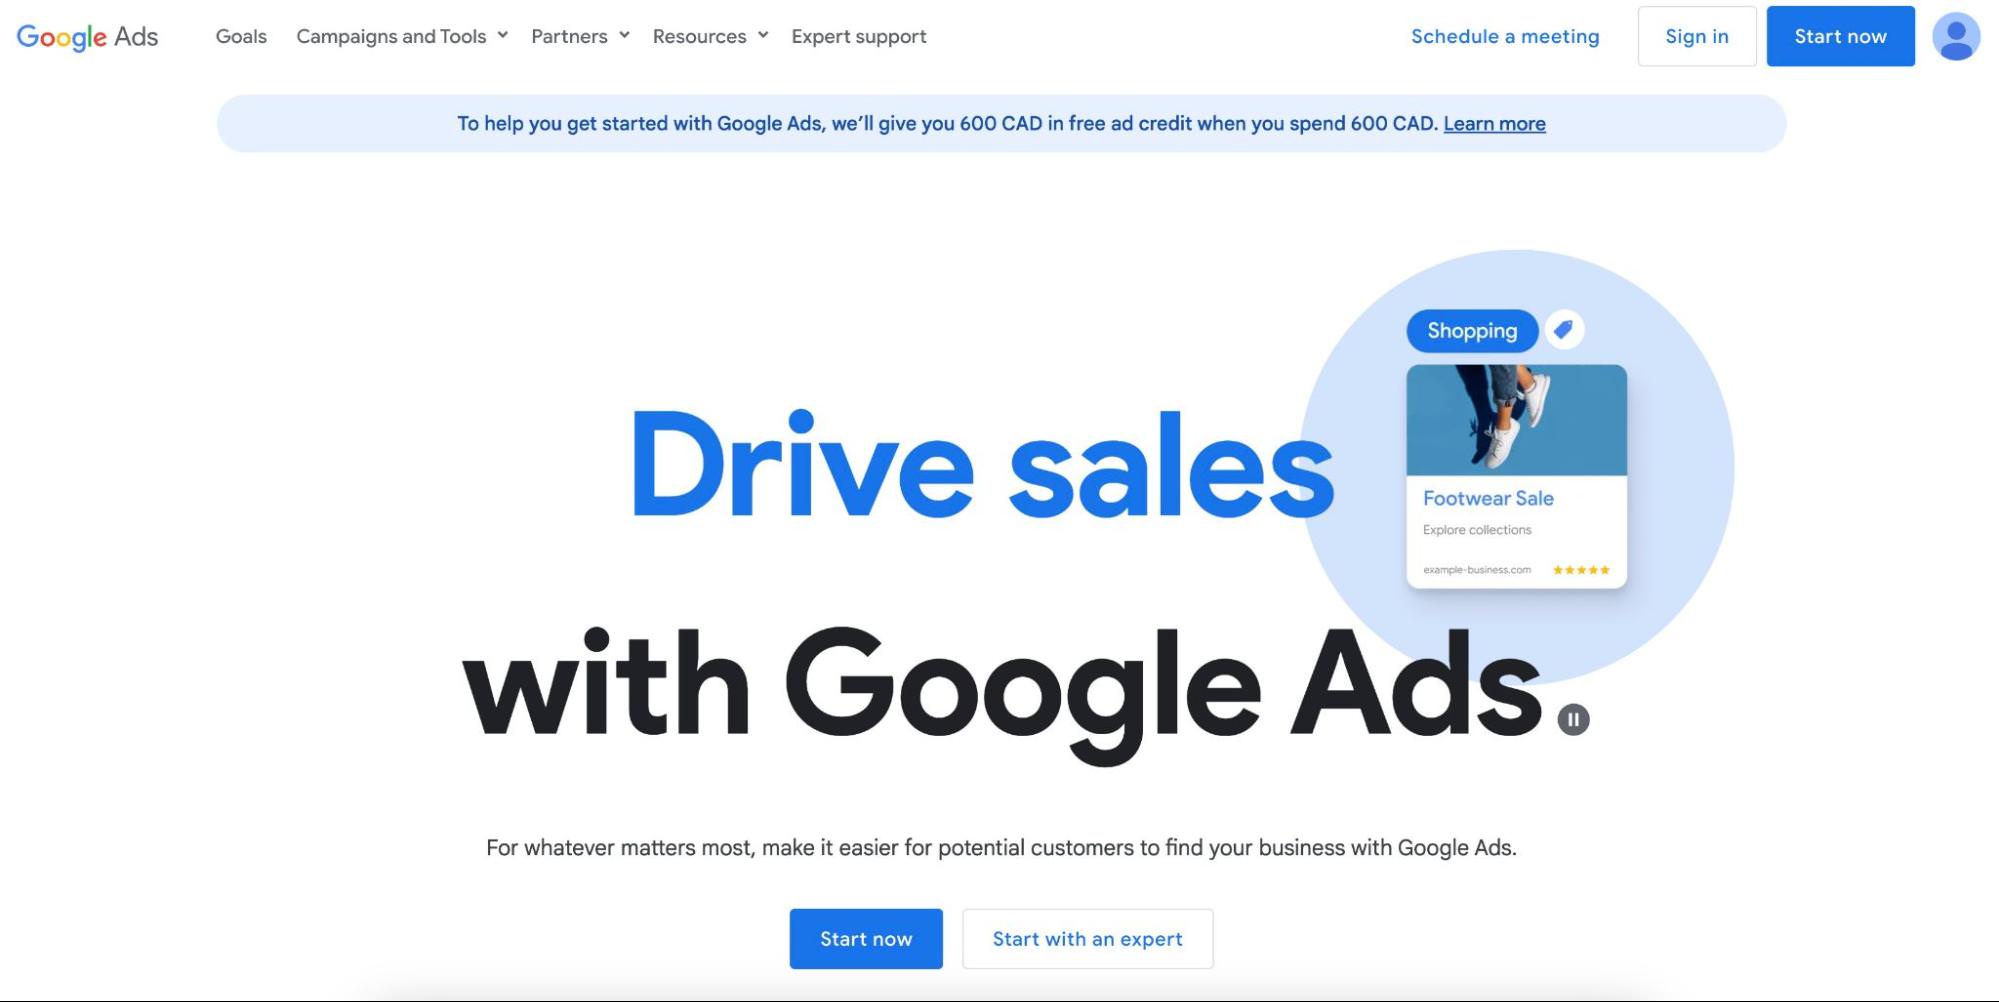 képernyőkép, amely azt mondja, hogy növelje az eladásokat a Google hirdetéseivel